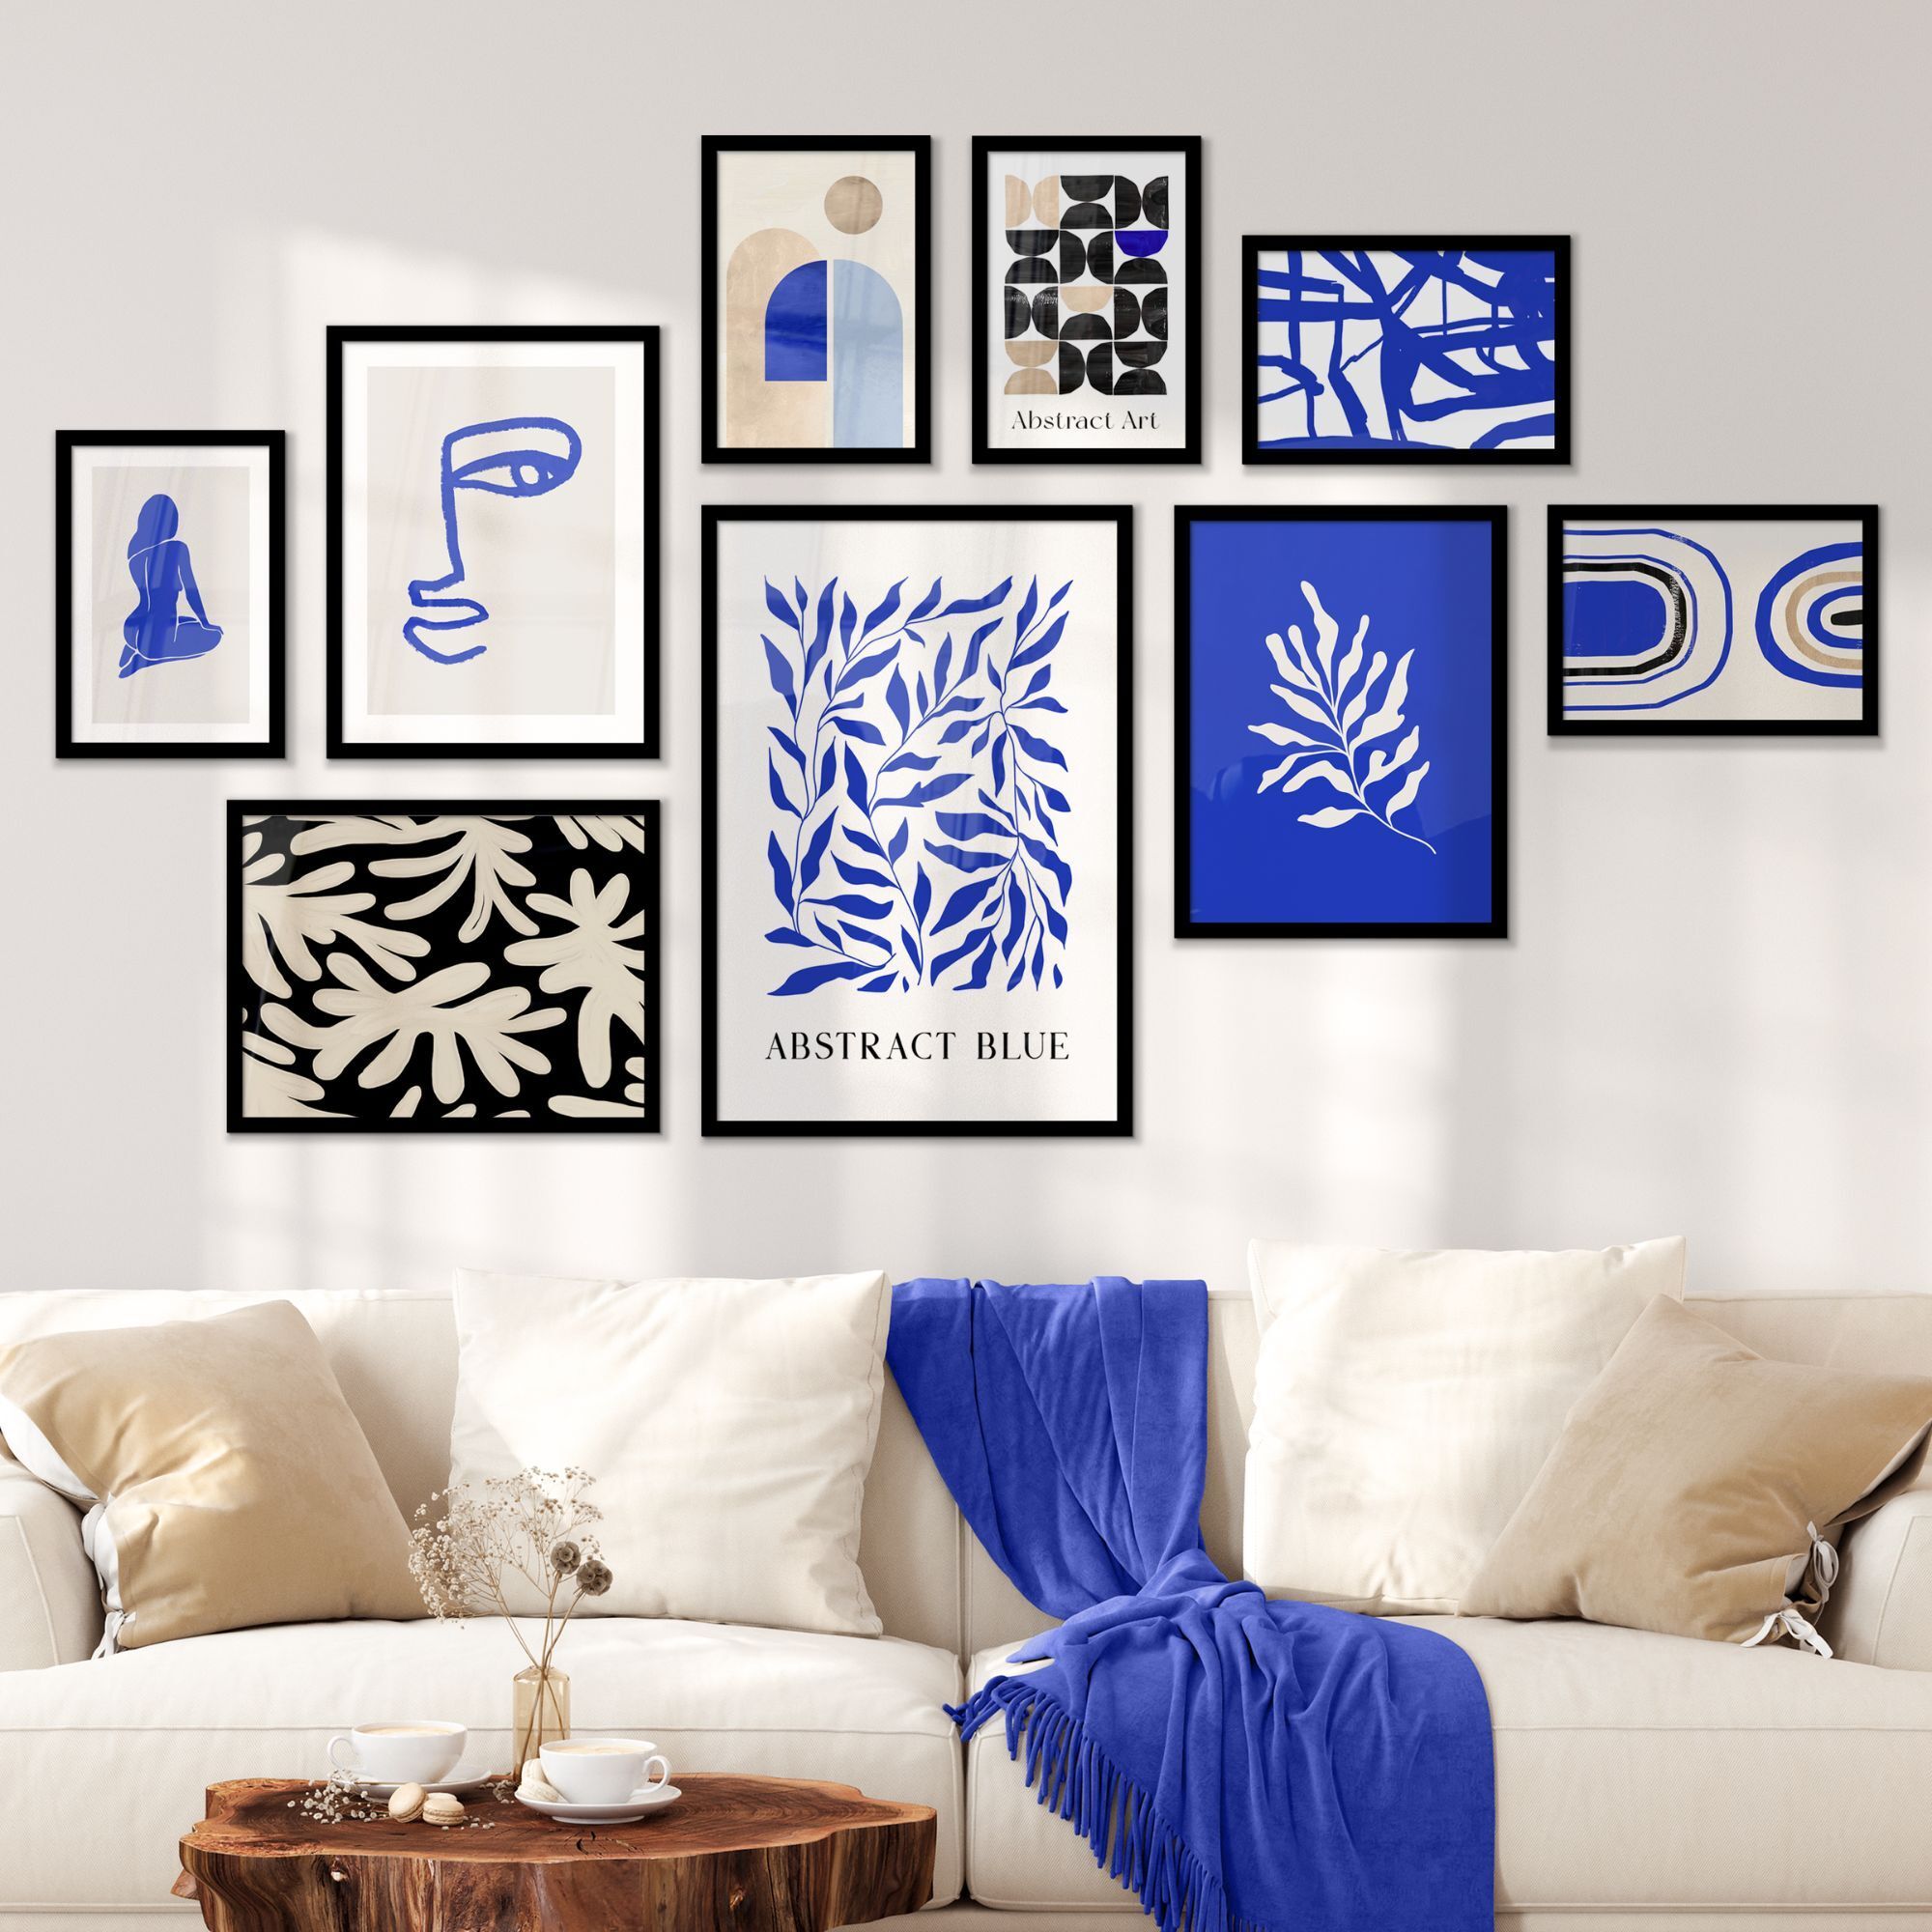 Fotowand artistiek blauw aan een muur boven een witte bank